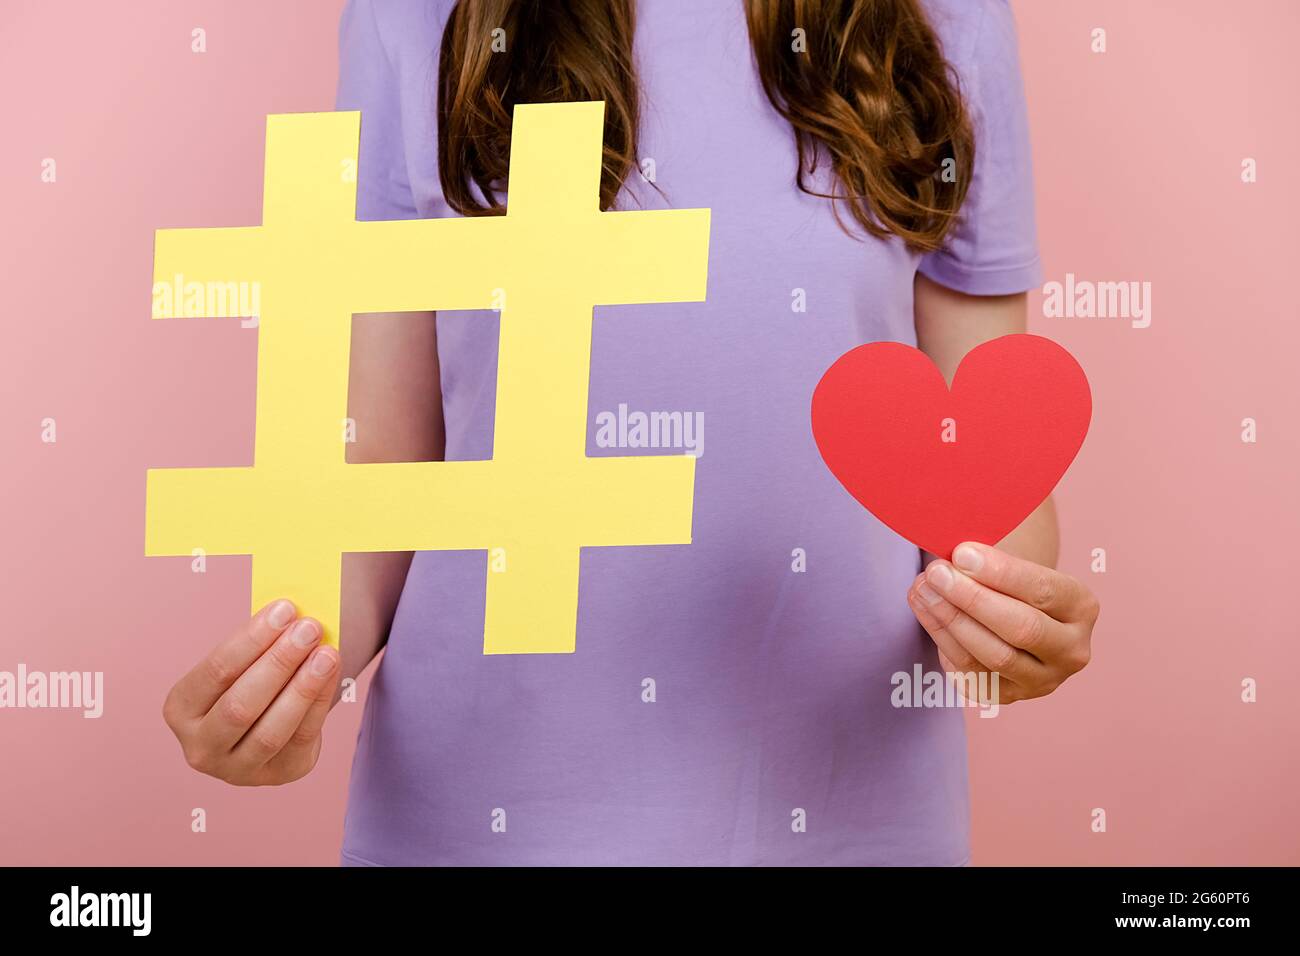 Nahaufnahmen von zugeschnittenen Aufnahmen einer jungen Frau, die ein T-Shirt trägt, zeigen ein großes gelbes Hashtag-Schild und ein kleines rotes Herz, das isoliert über einer rosa Wand posiert Stockfoto